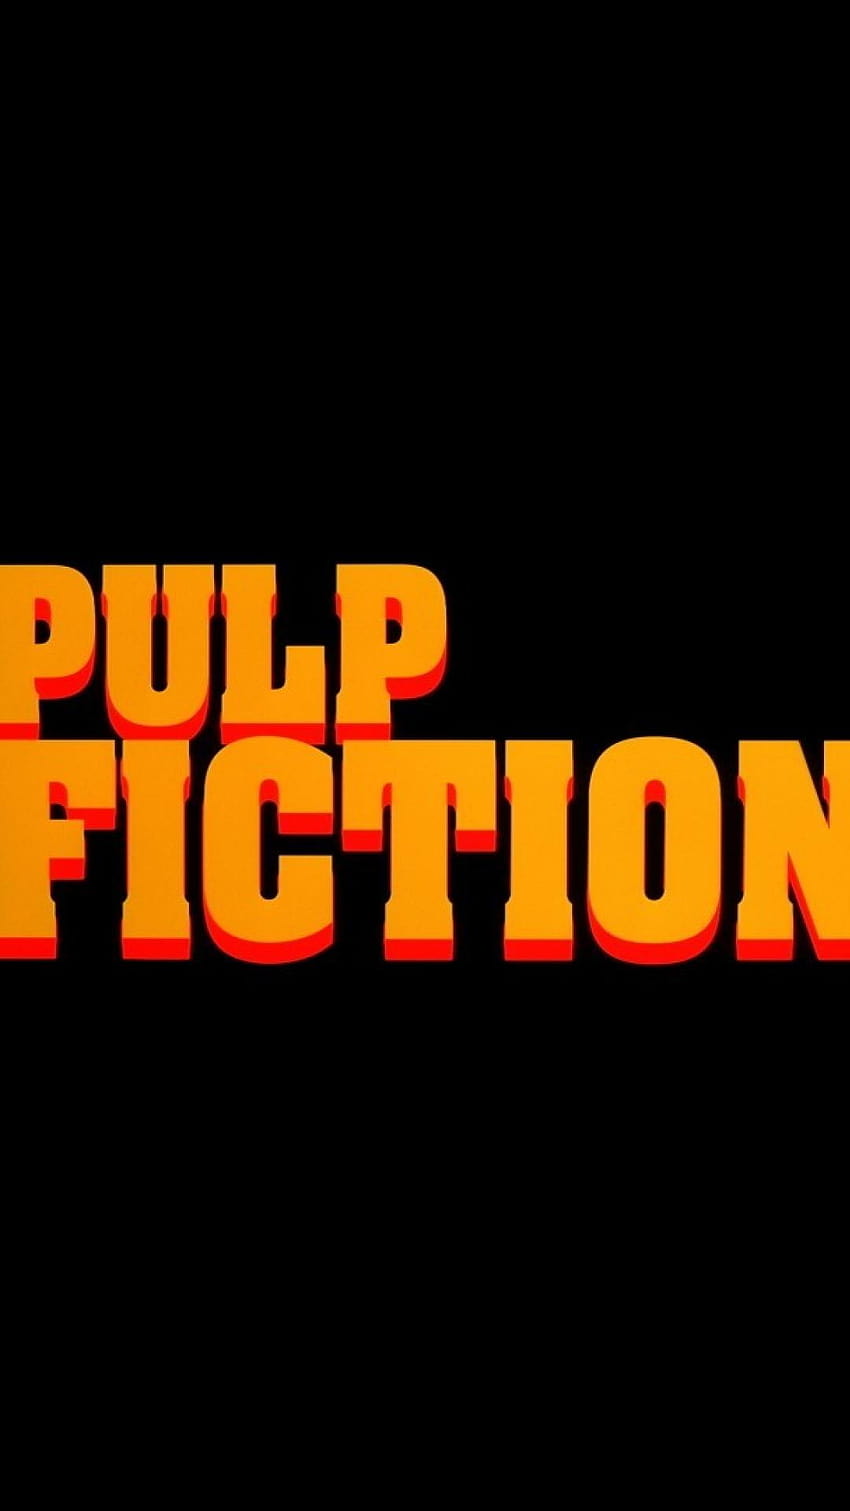 Pulp Fiction Phone, pulp fiction móvil fondo de pantalla del teléfono